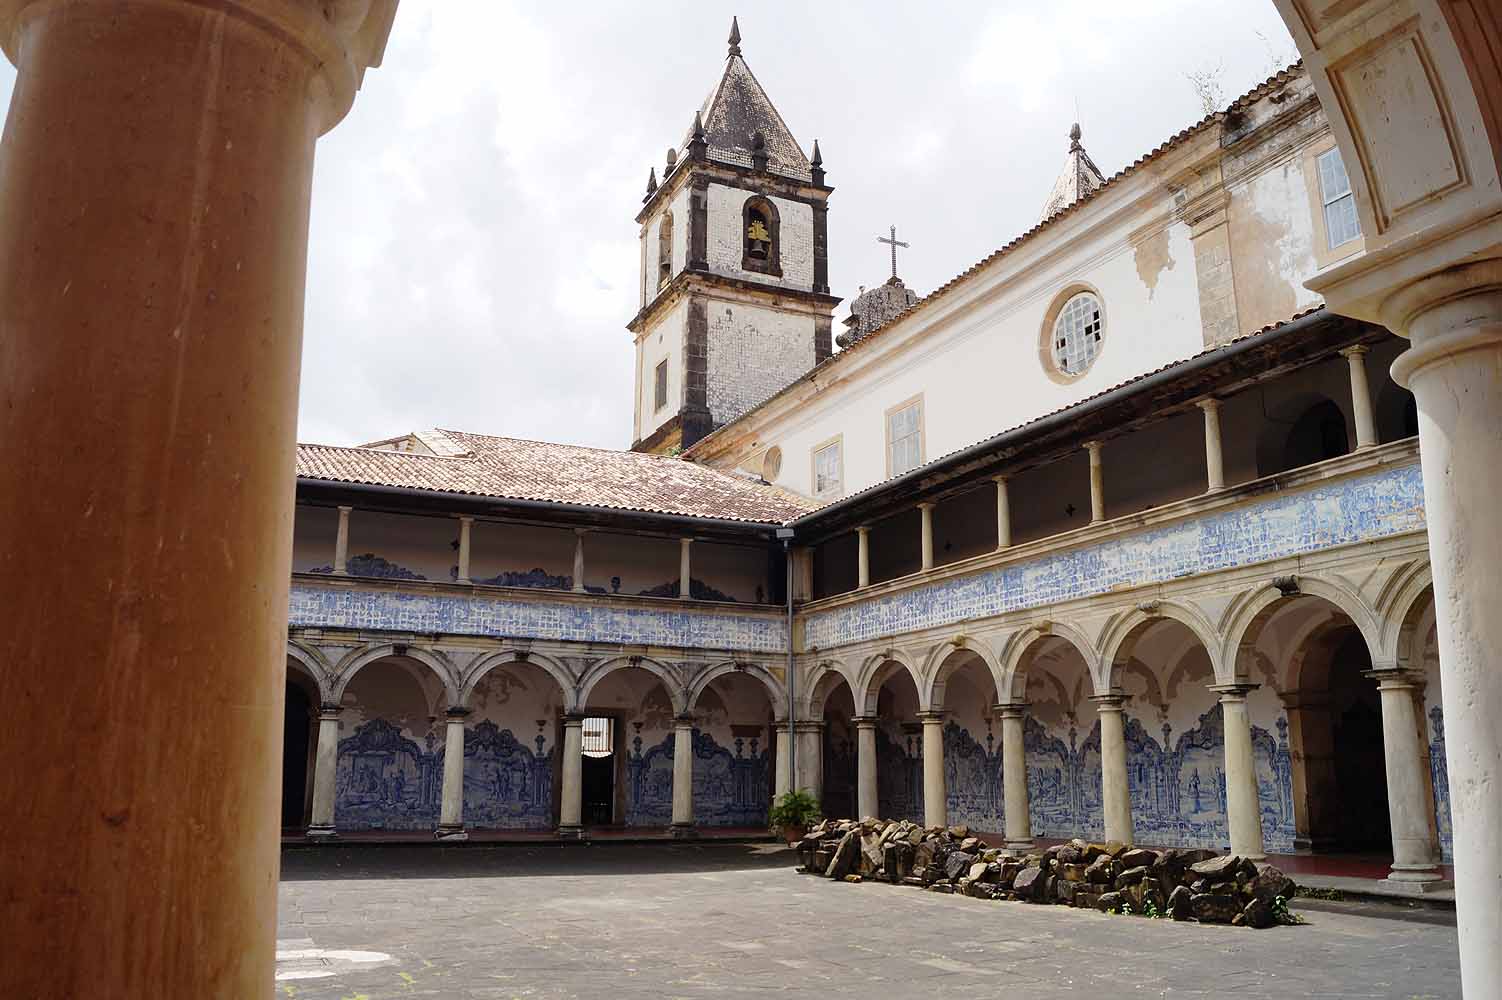 São Francisco in Salvador da Bahia